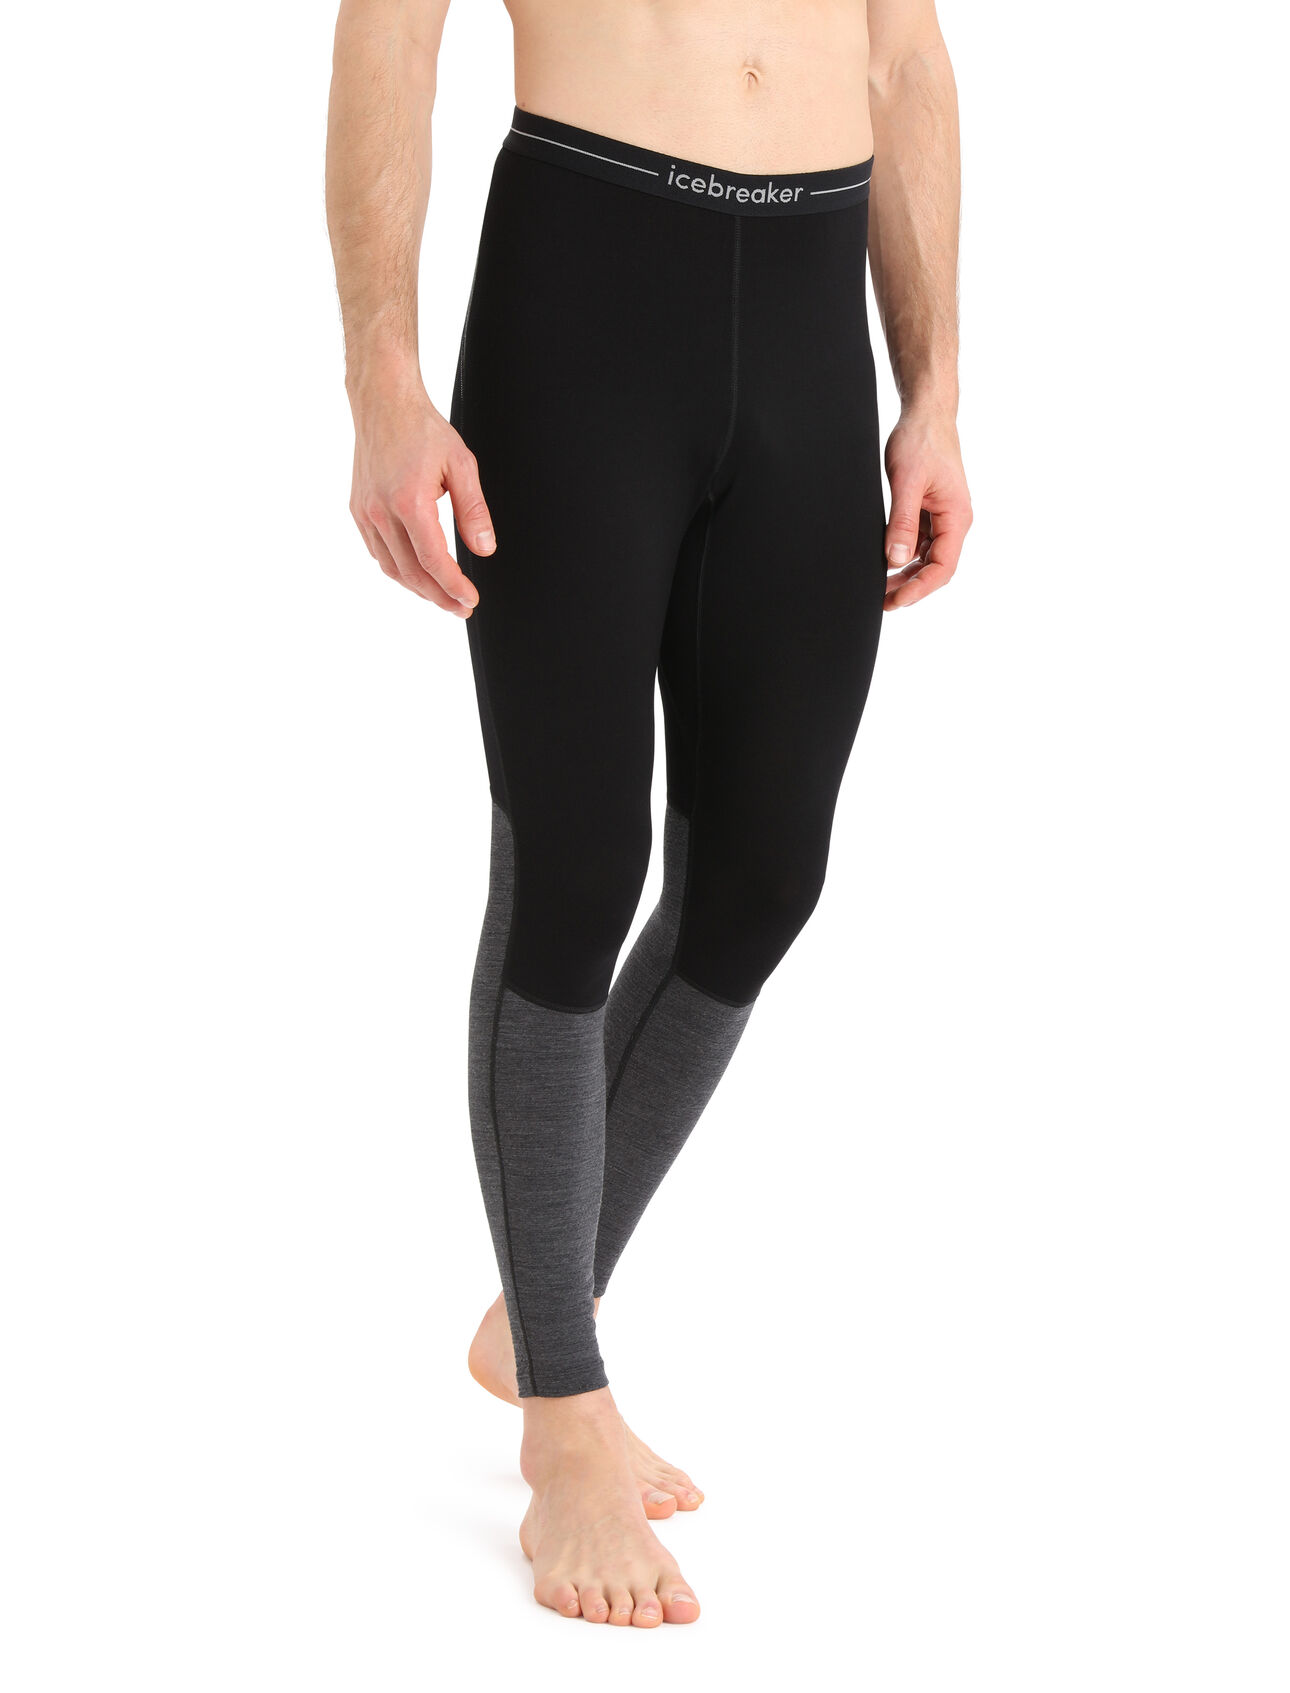 Herr 260 ZoneKnit™ leggings i merino 260 ZoneKnit™ leggings är en tungviktig baslagerunderdel som är utformad för att reglera kroppstemperaturen under högintensiv träning och är tillverkad av 100% ren och naturlig merinoull. 